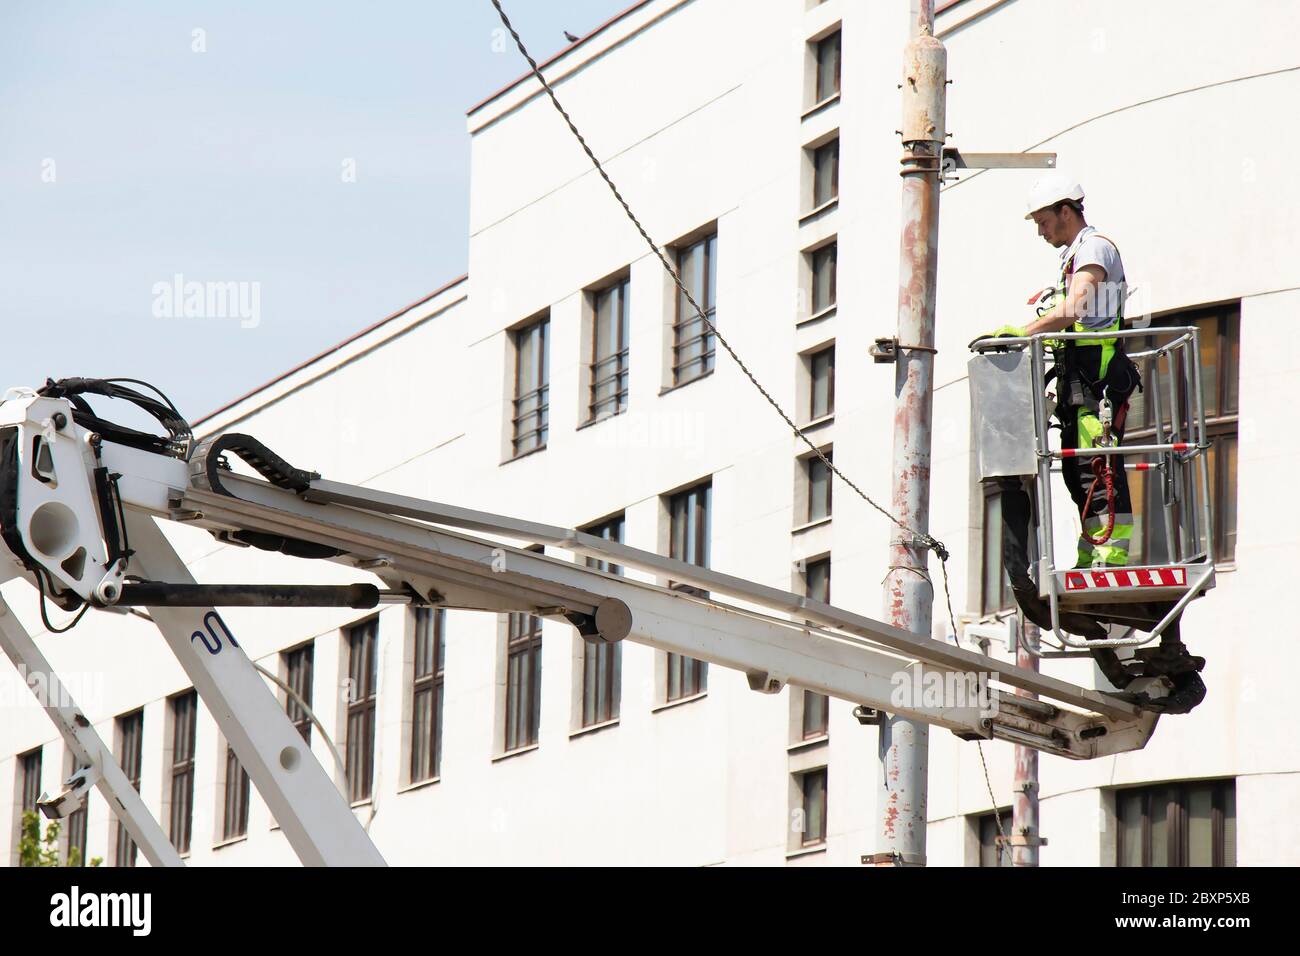 Belgrad, Serbien - 24. April 2020: Bauarbeiter im Krankorb, Kirschpflücker, Installation von Metallhalter auf Straßenlichtmast Stockfoto